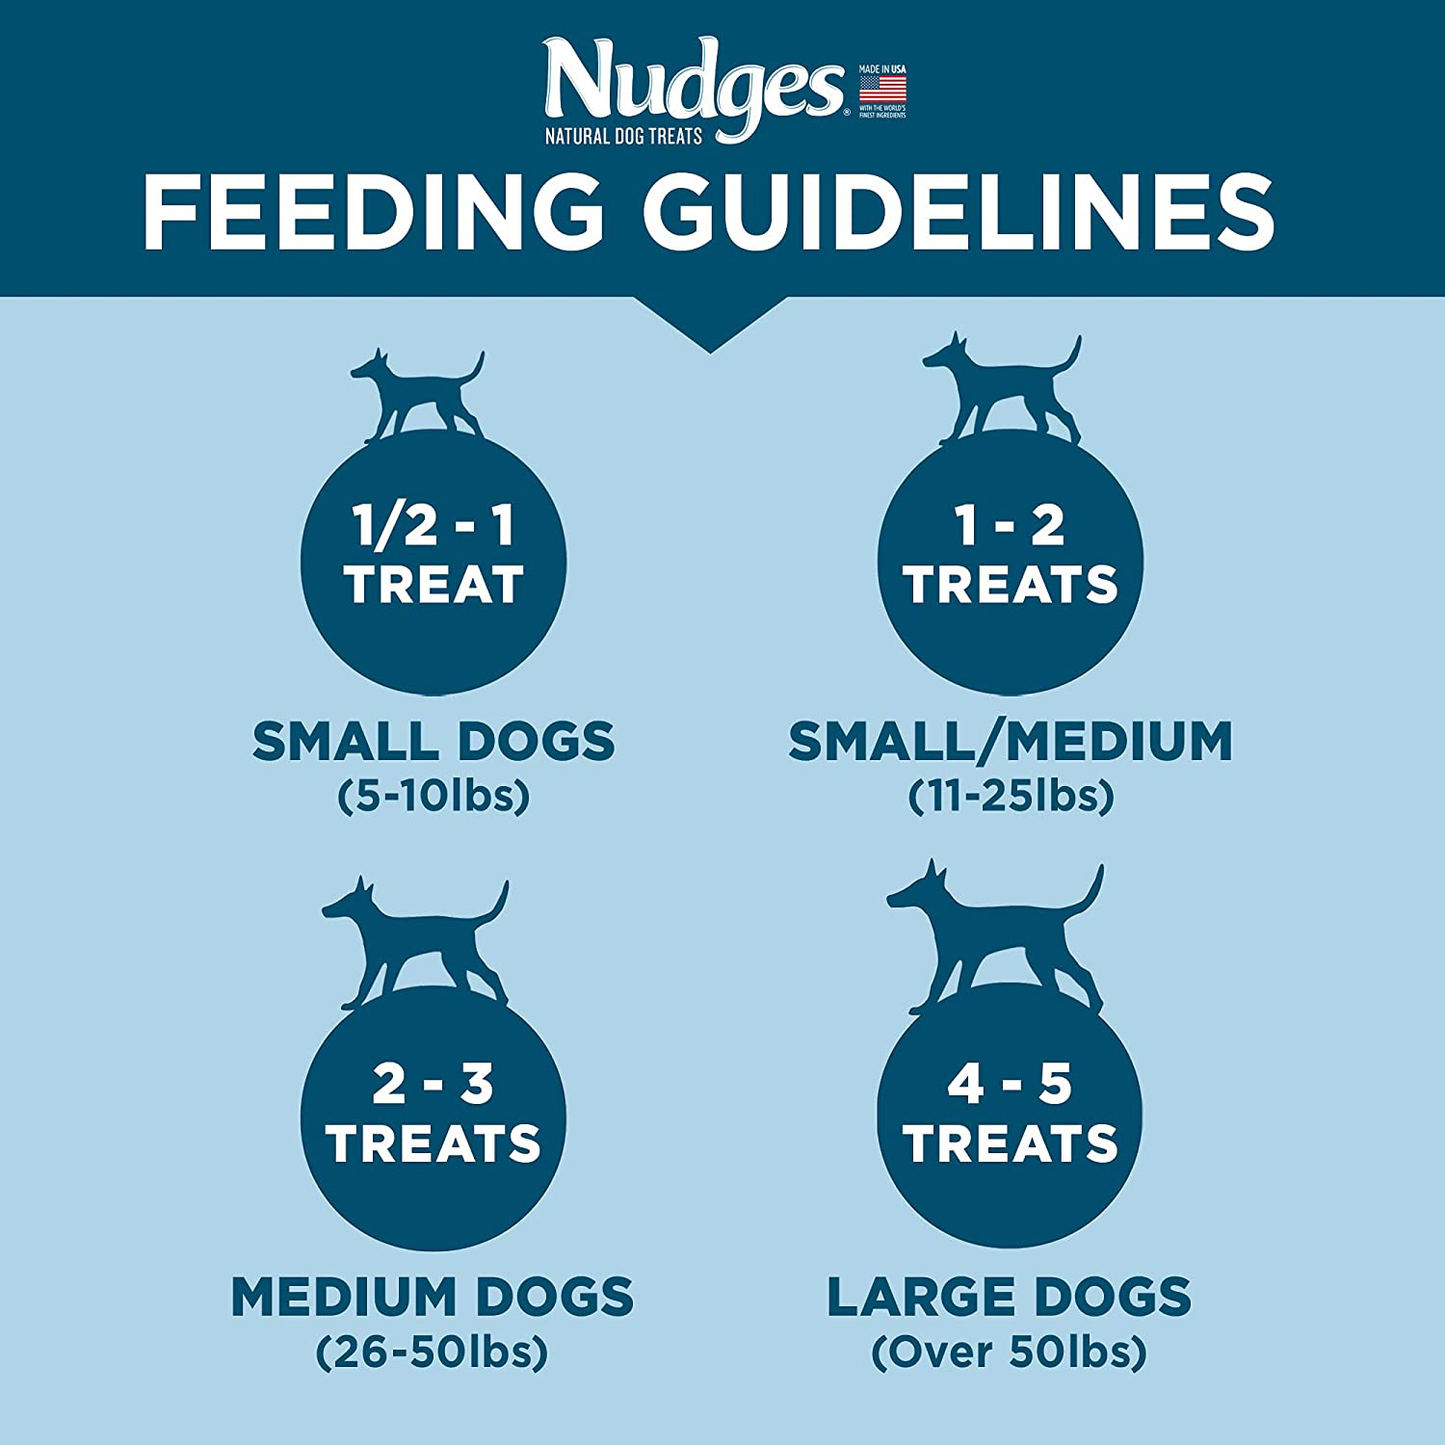 Nudges Natural Dog Treats Grillers Burgers, 16 Oz Animals & Pet Supplies > Pet Supplies > Dog Supplies > Dog Treats Nudges   